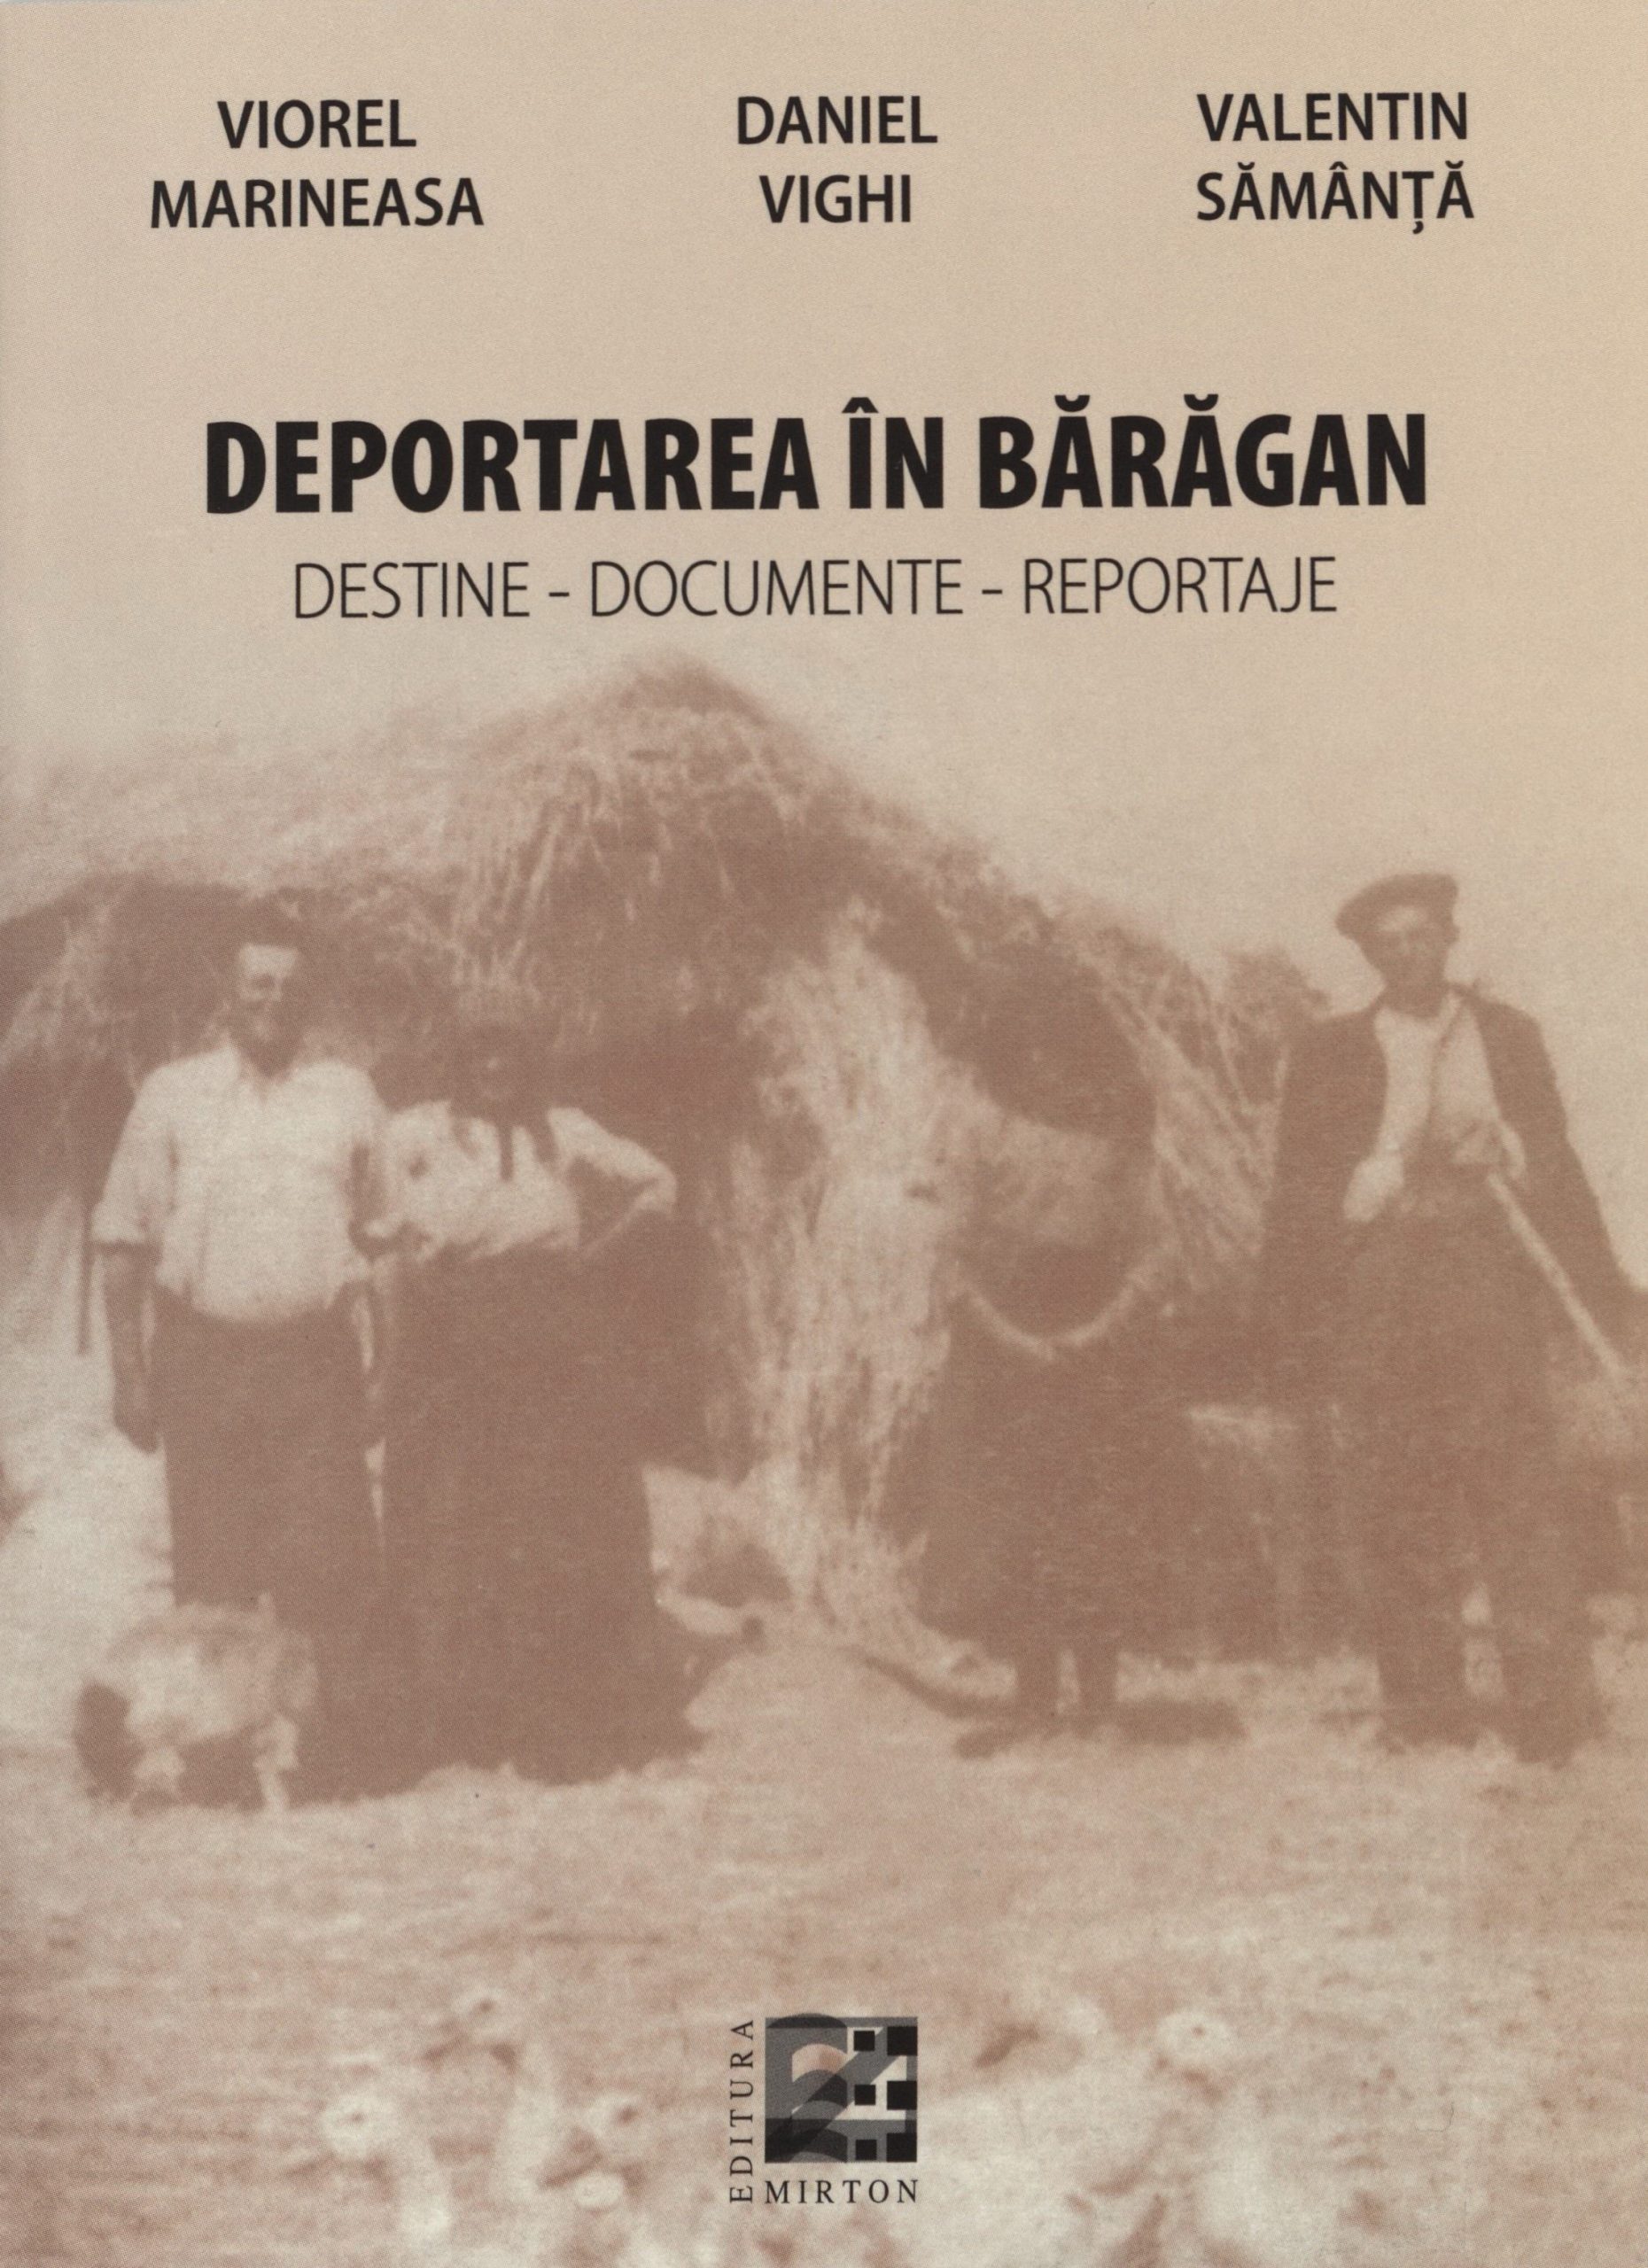 Volum integral: 2016 V. Marineasa, D. Vighi, V. Samanta - Deportarea in Baragan